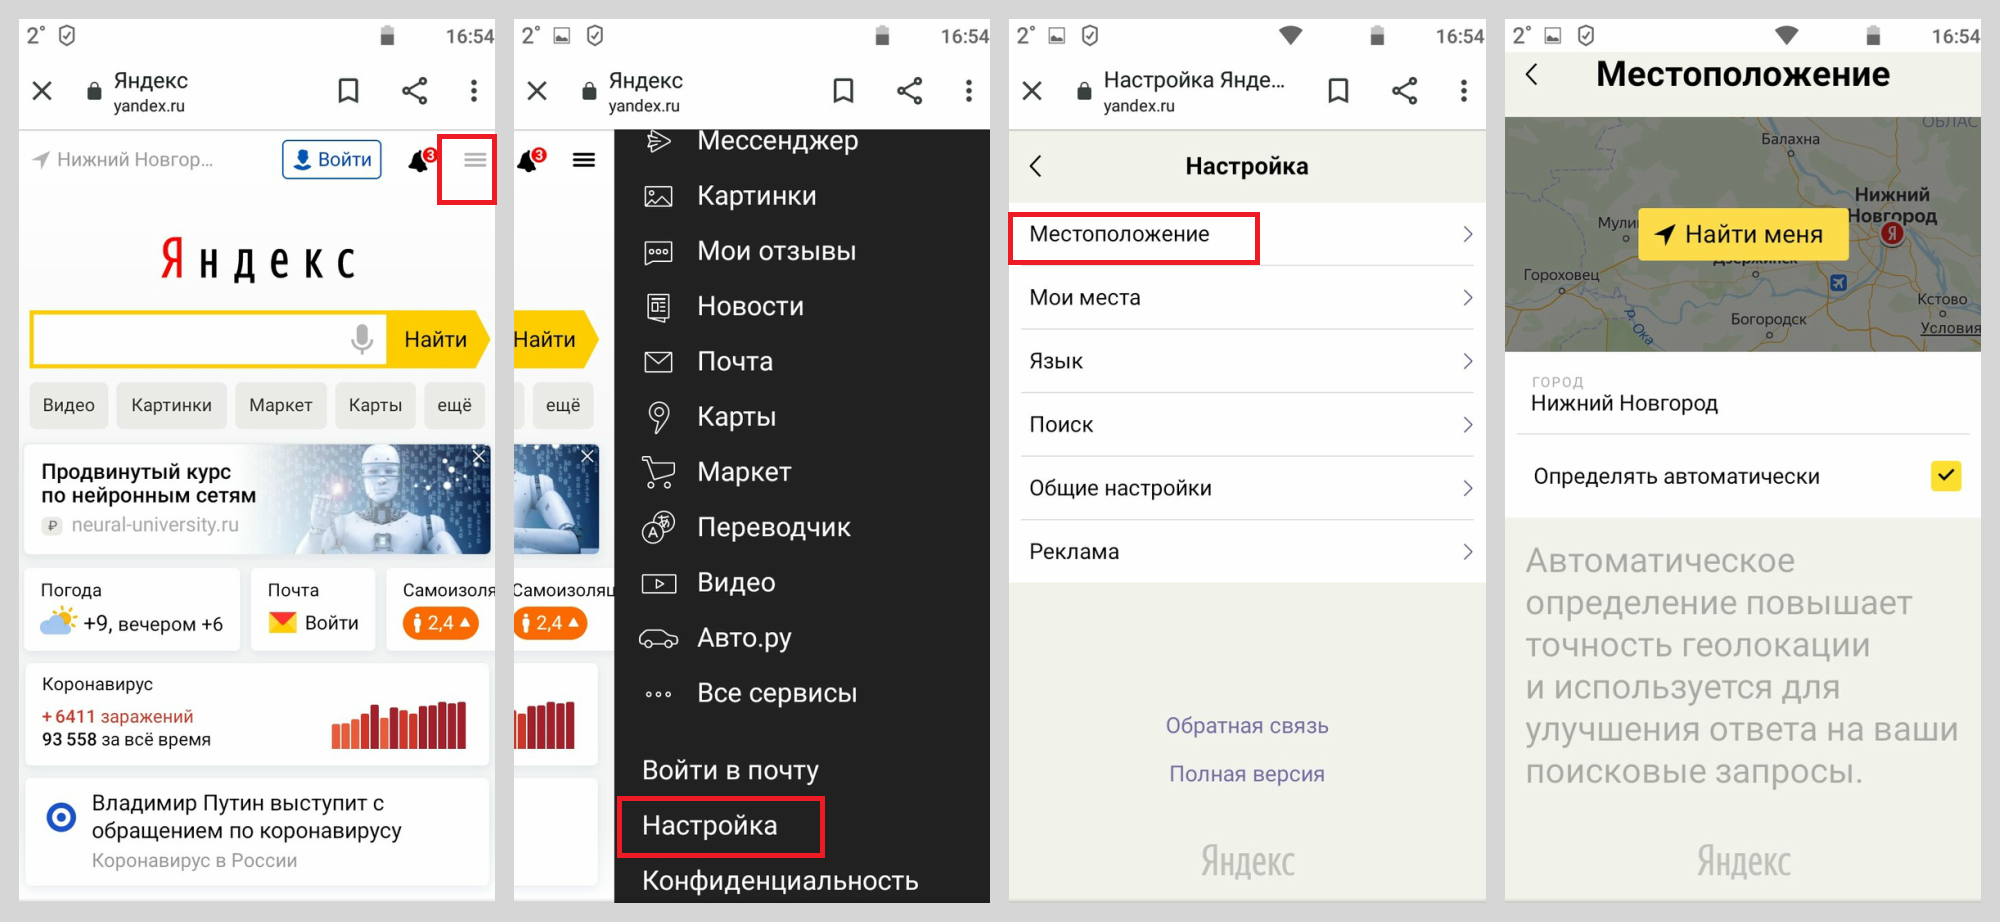 Как изменить город в Яндексе